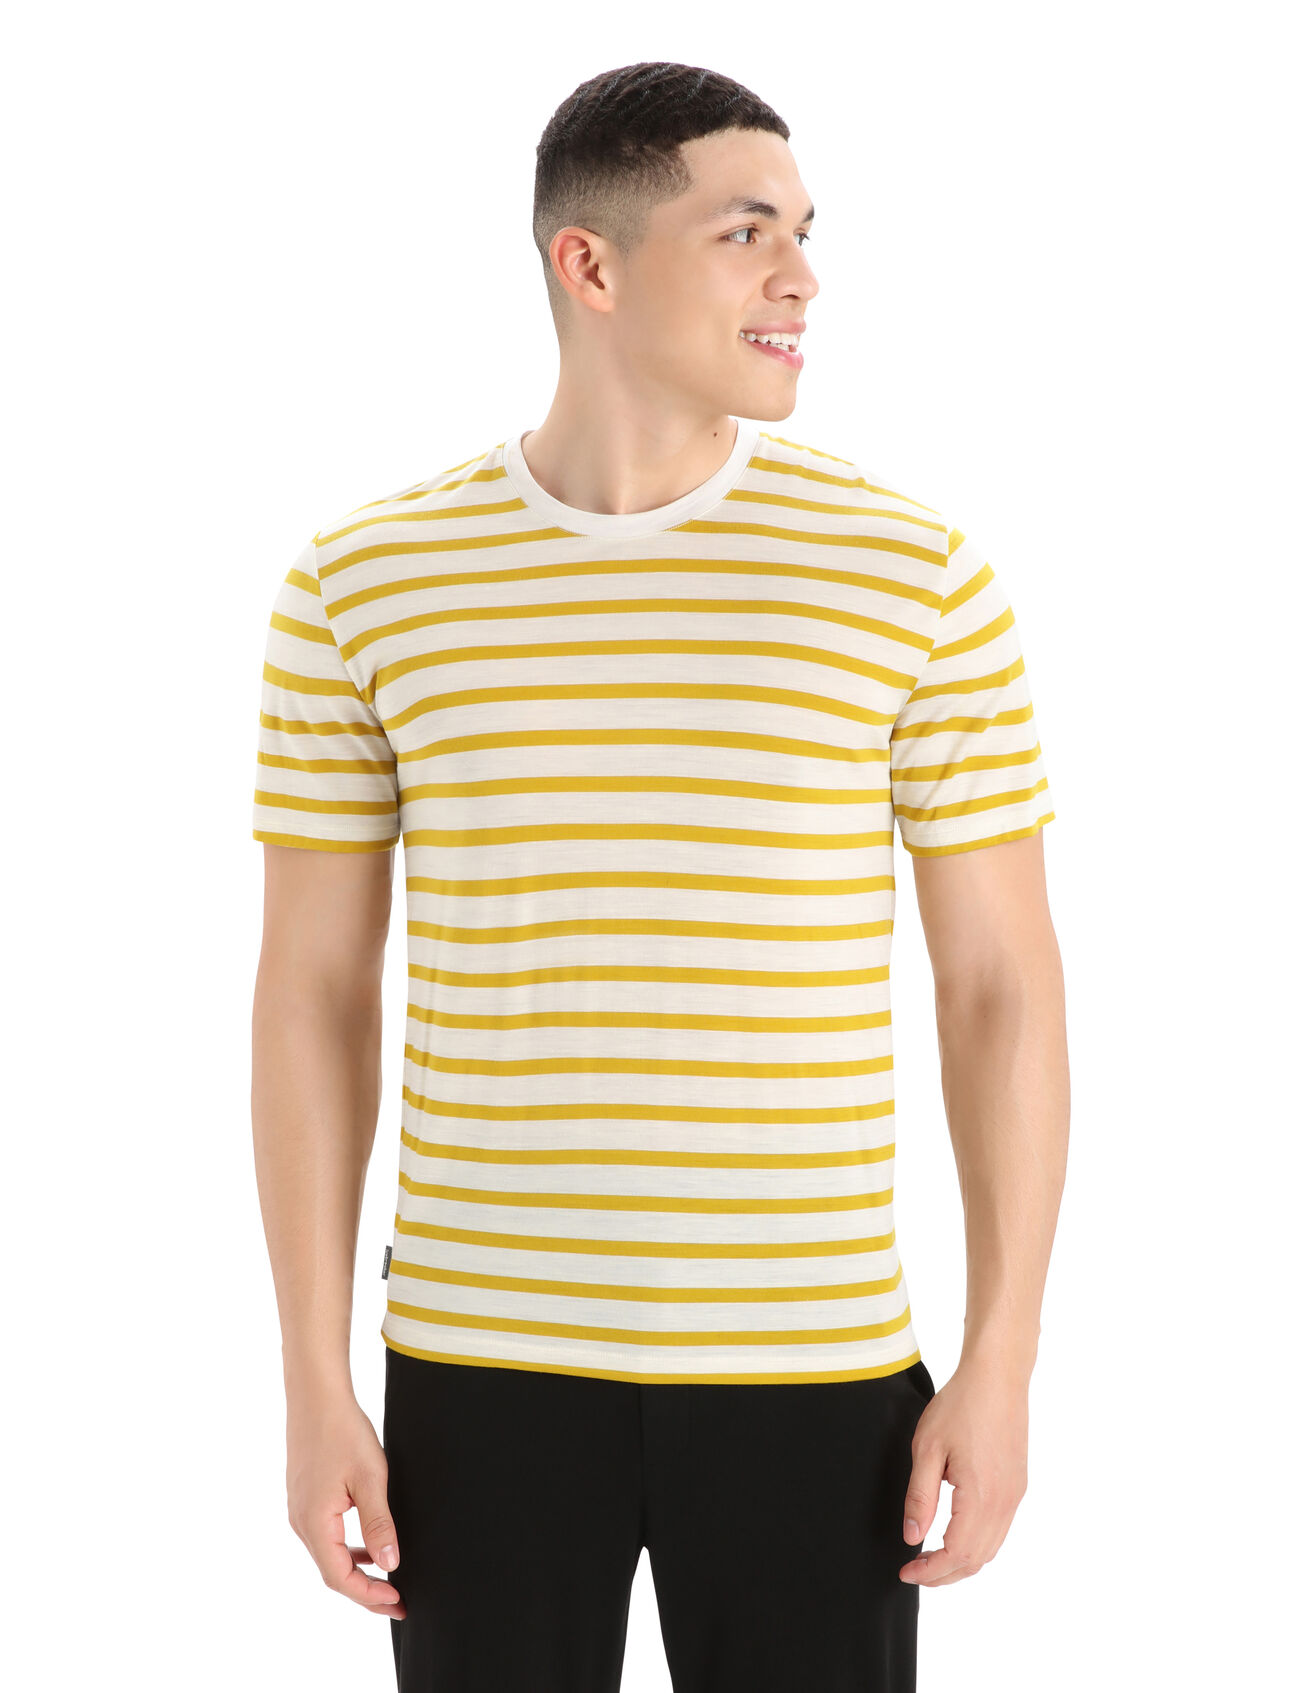 T-shirt manches courtes mérinos Drayden Stripe Homme Composé de notre jersey mérinos Cool-Lite™ qui gère l’humidité, le t-shirt manches courtes Drayden Stripe est un haut à la fois classique et élégant, incroyablement respirant et polyvalent au quotidien. 